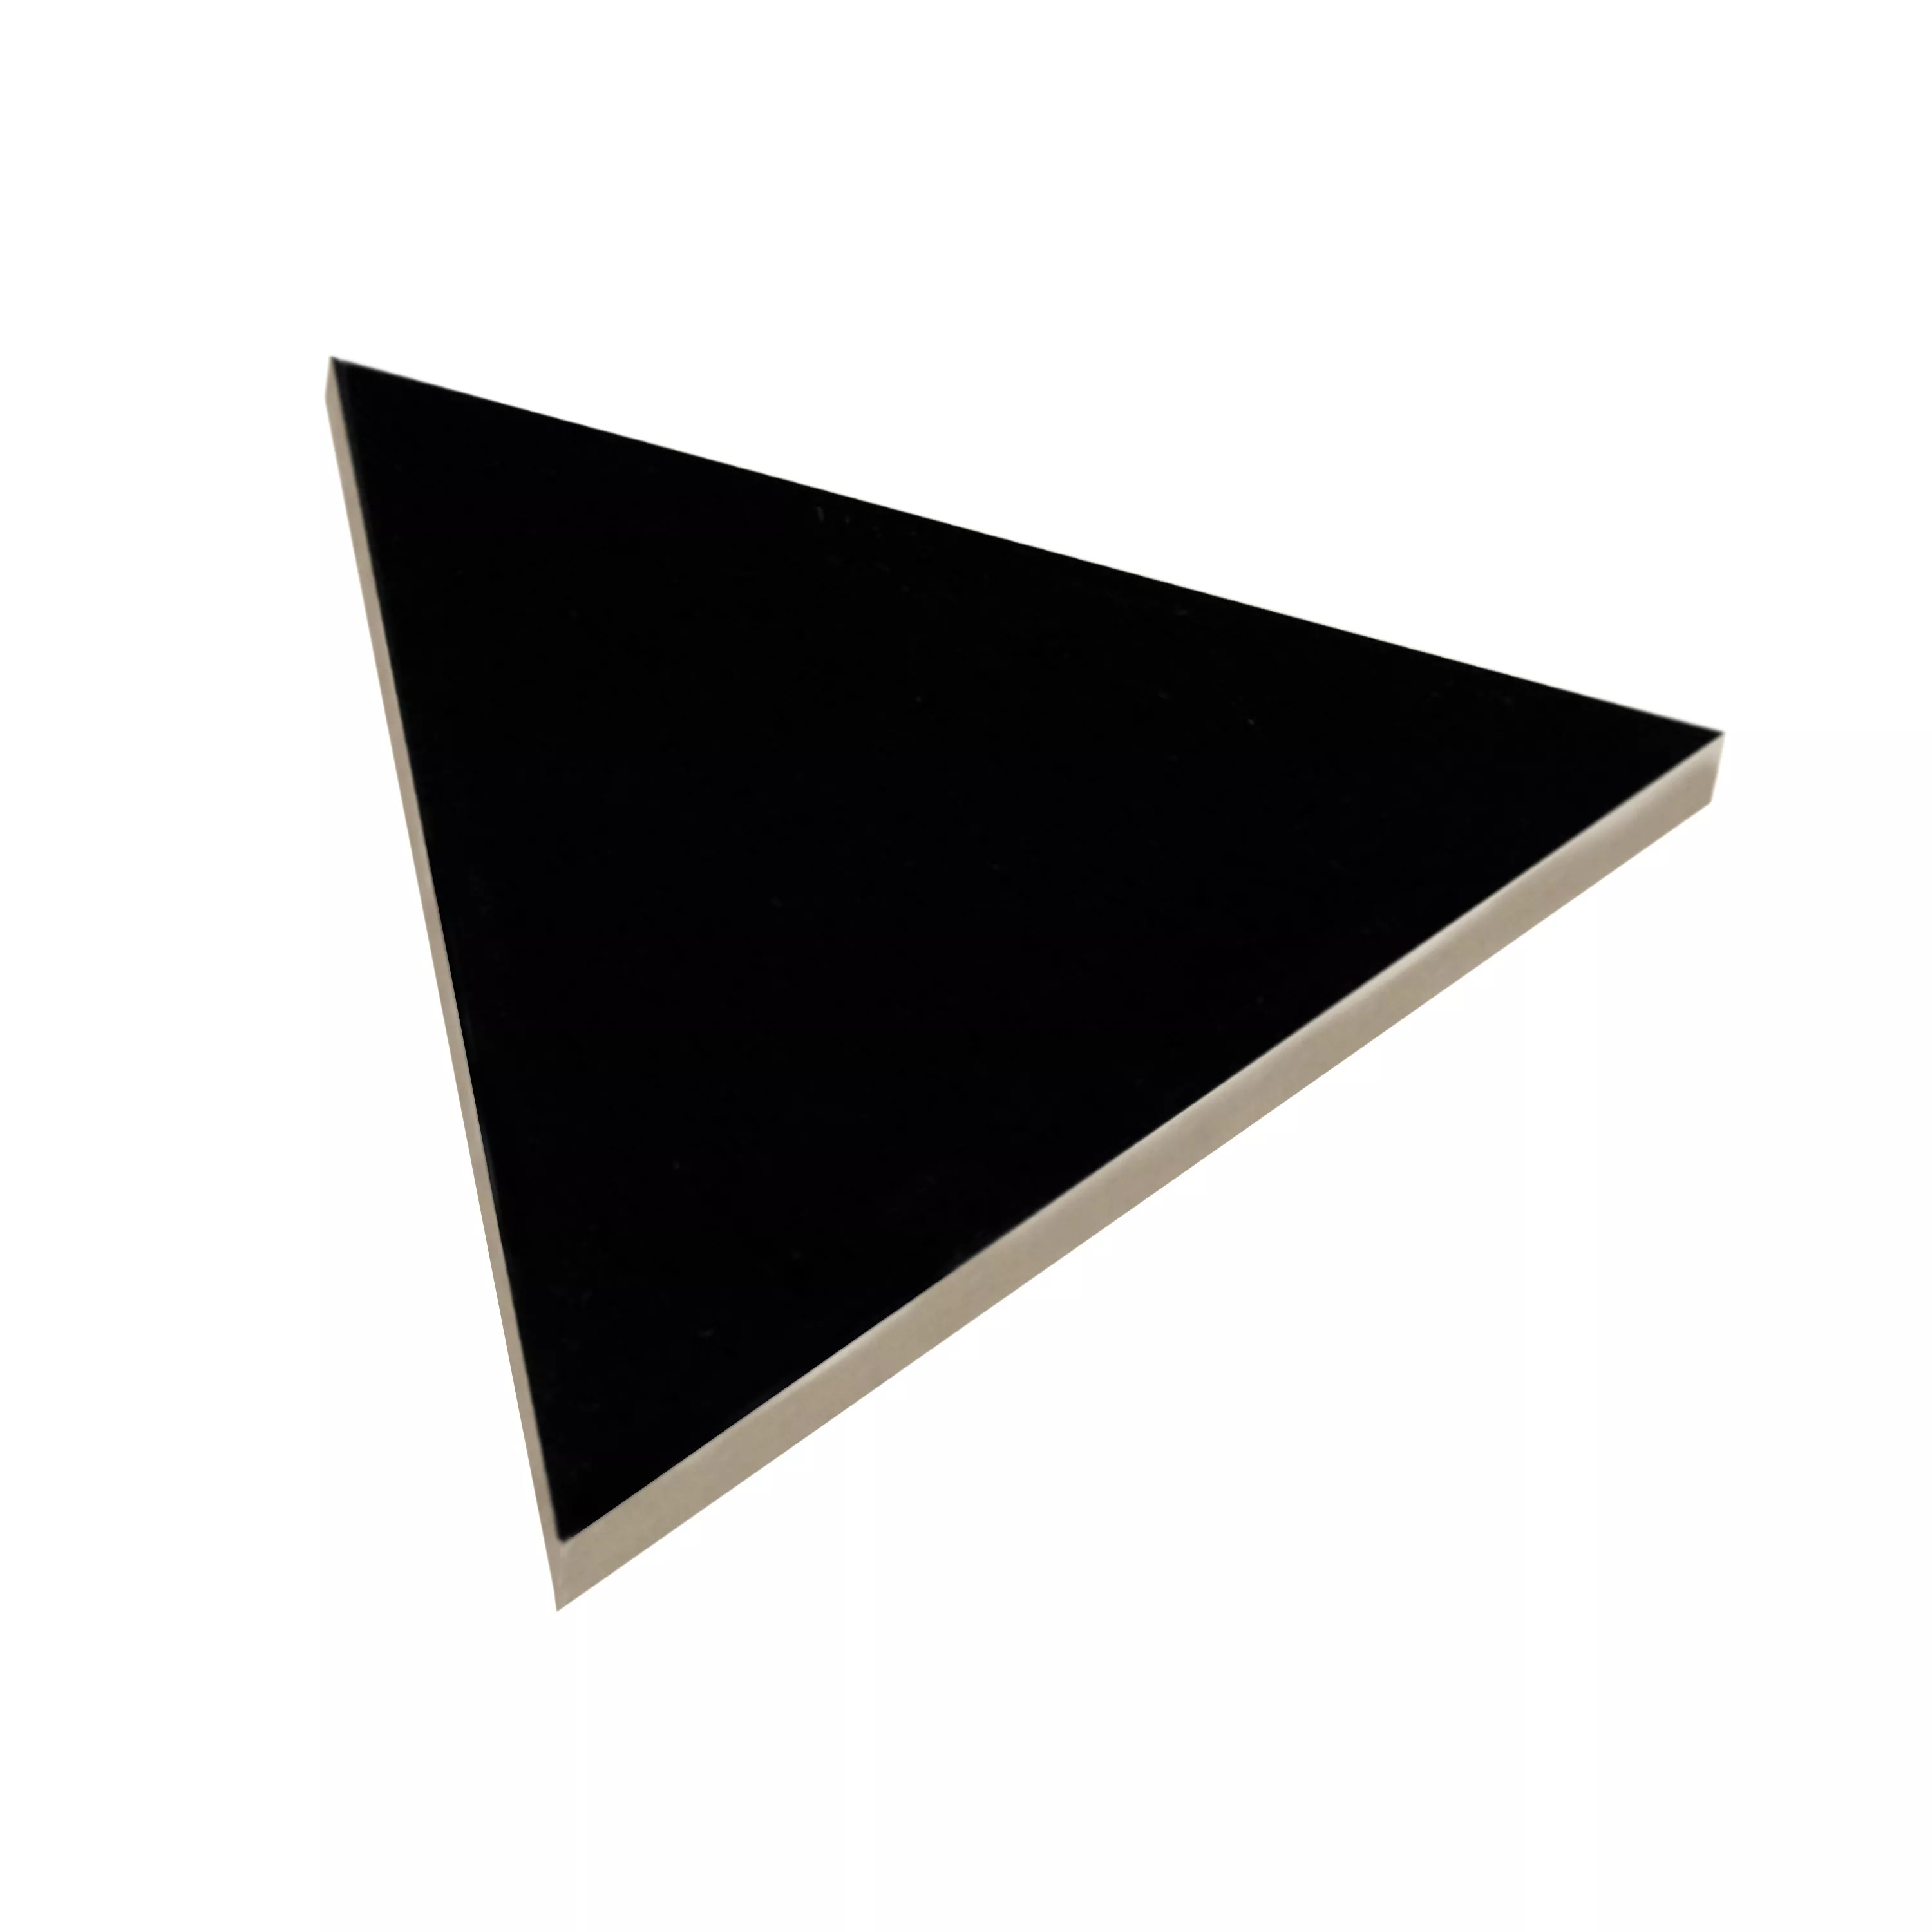 Sample Wall Tiles Britannia Triangle 10,8x12,4cm Black Mat